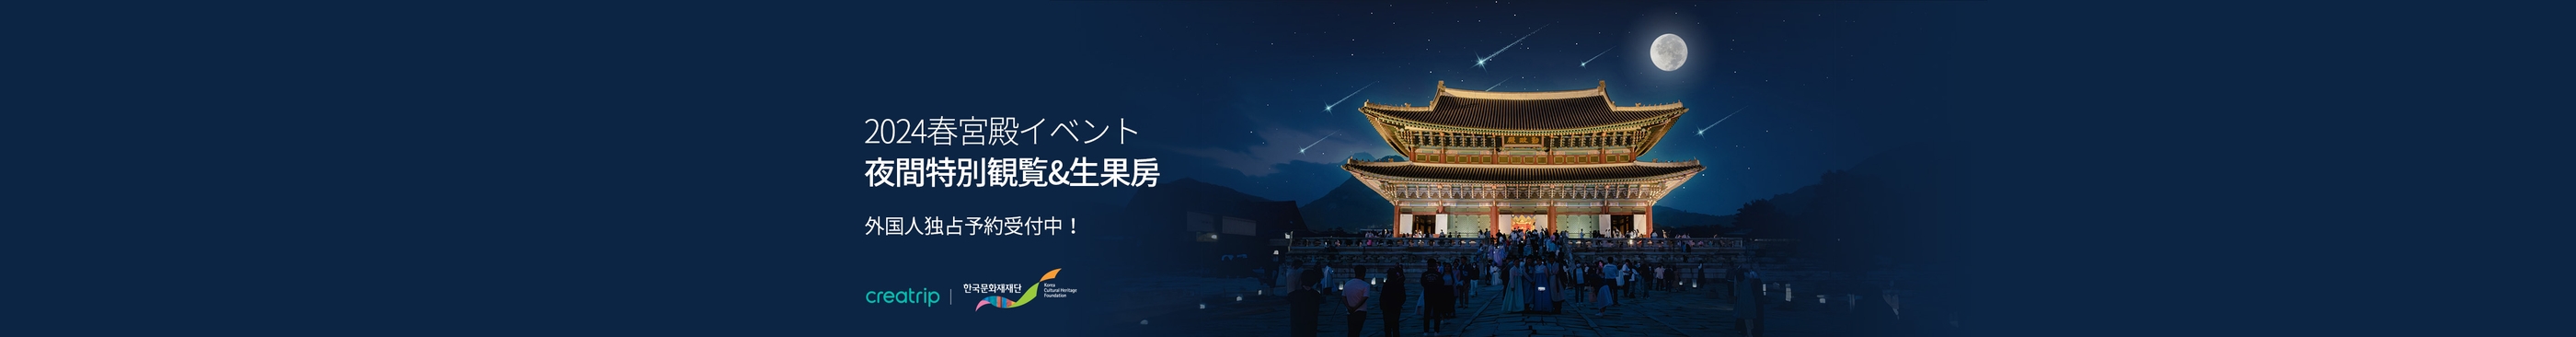 韓国宮殿夜間特別観覧2024